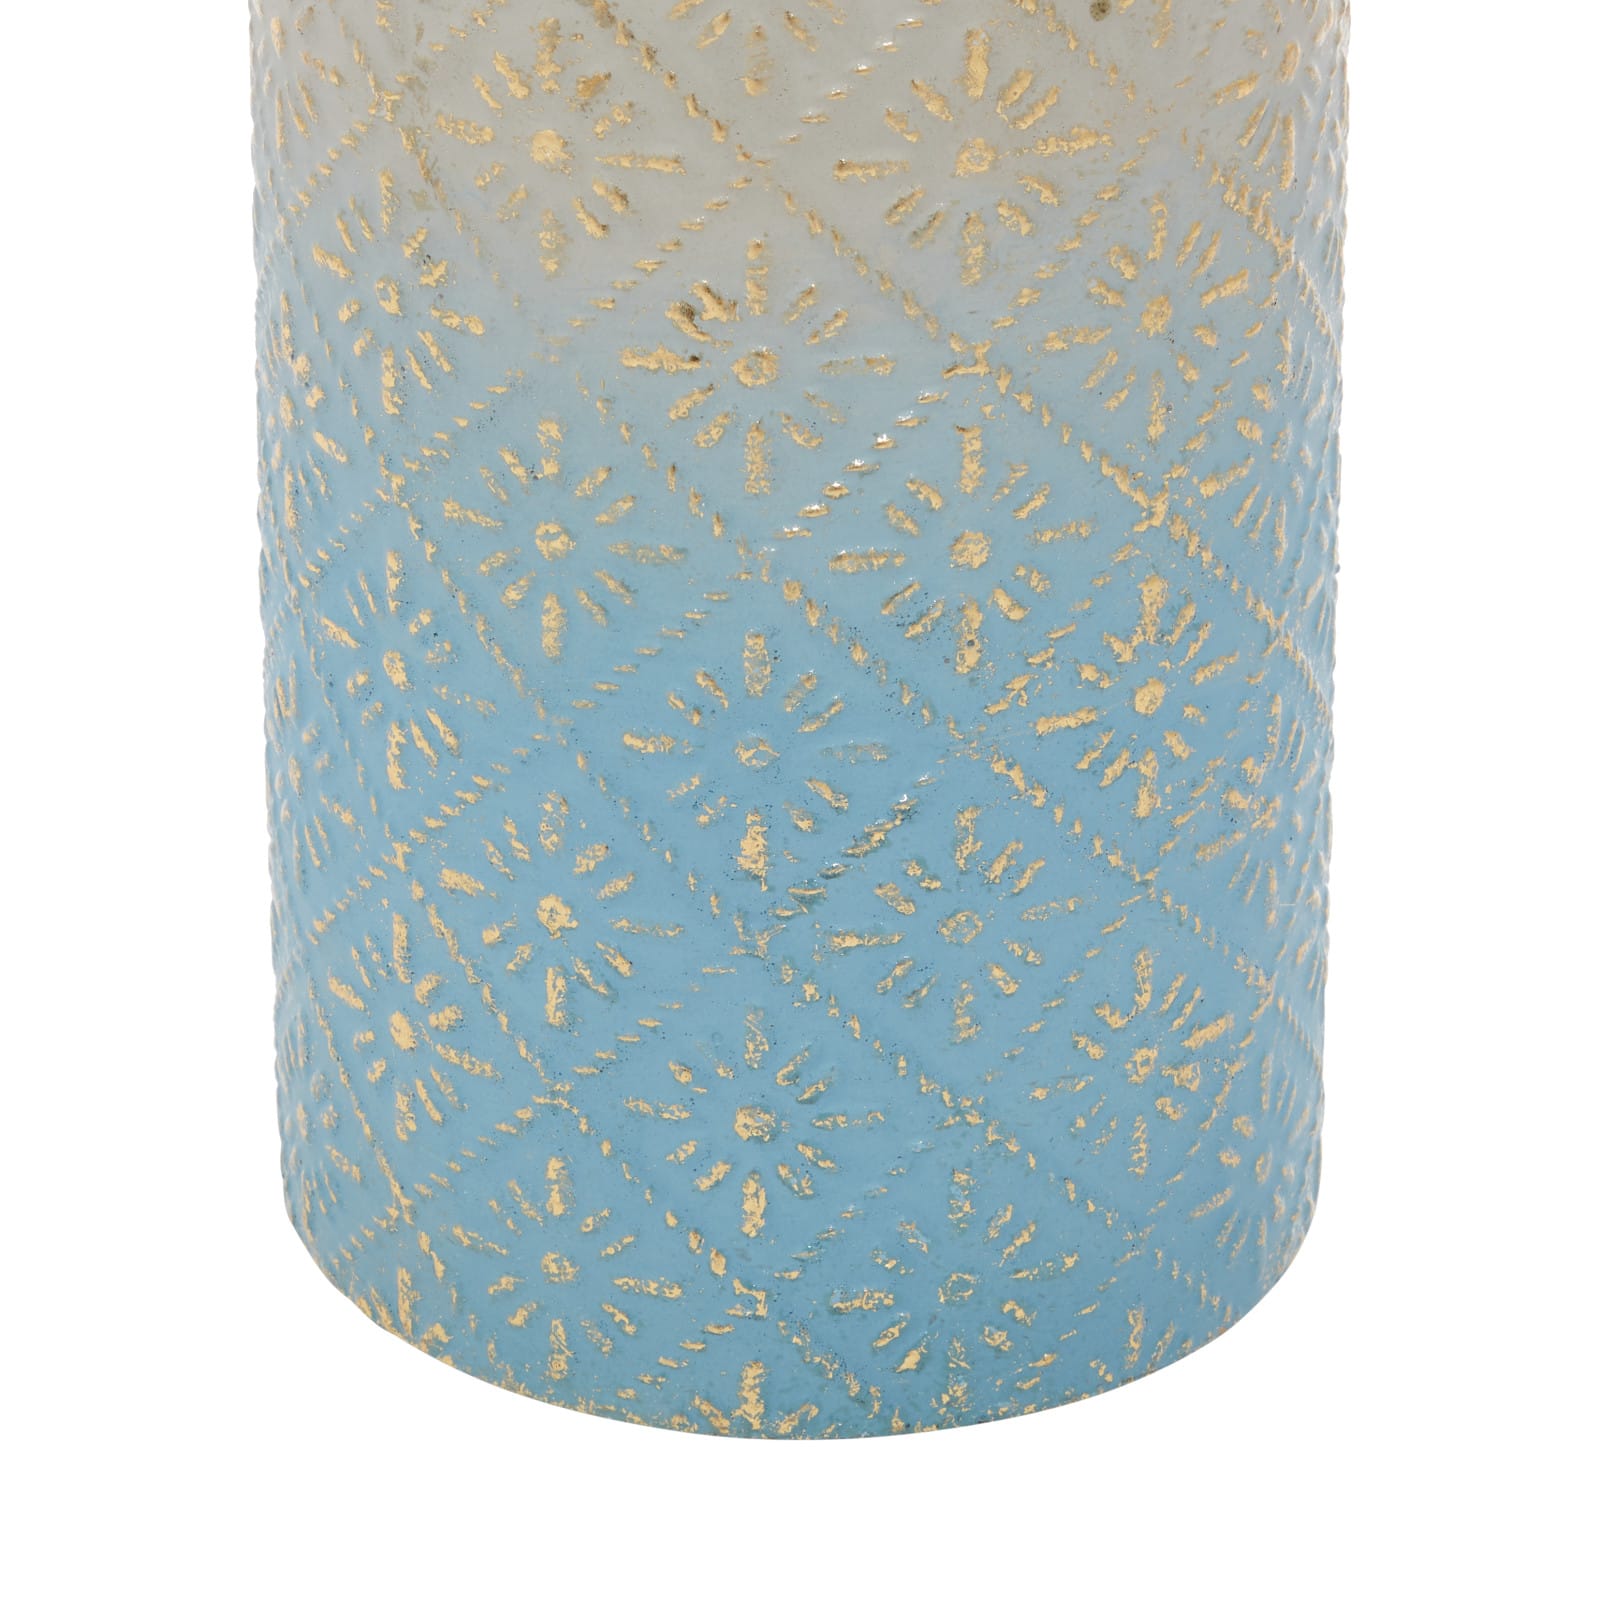 Set of 3 Blue Metal Coastal Style Vase, 27&#x22;, 24&#x22;, 20&#x22;